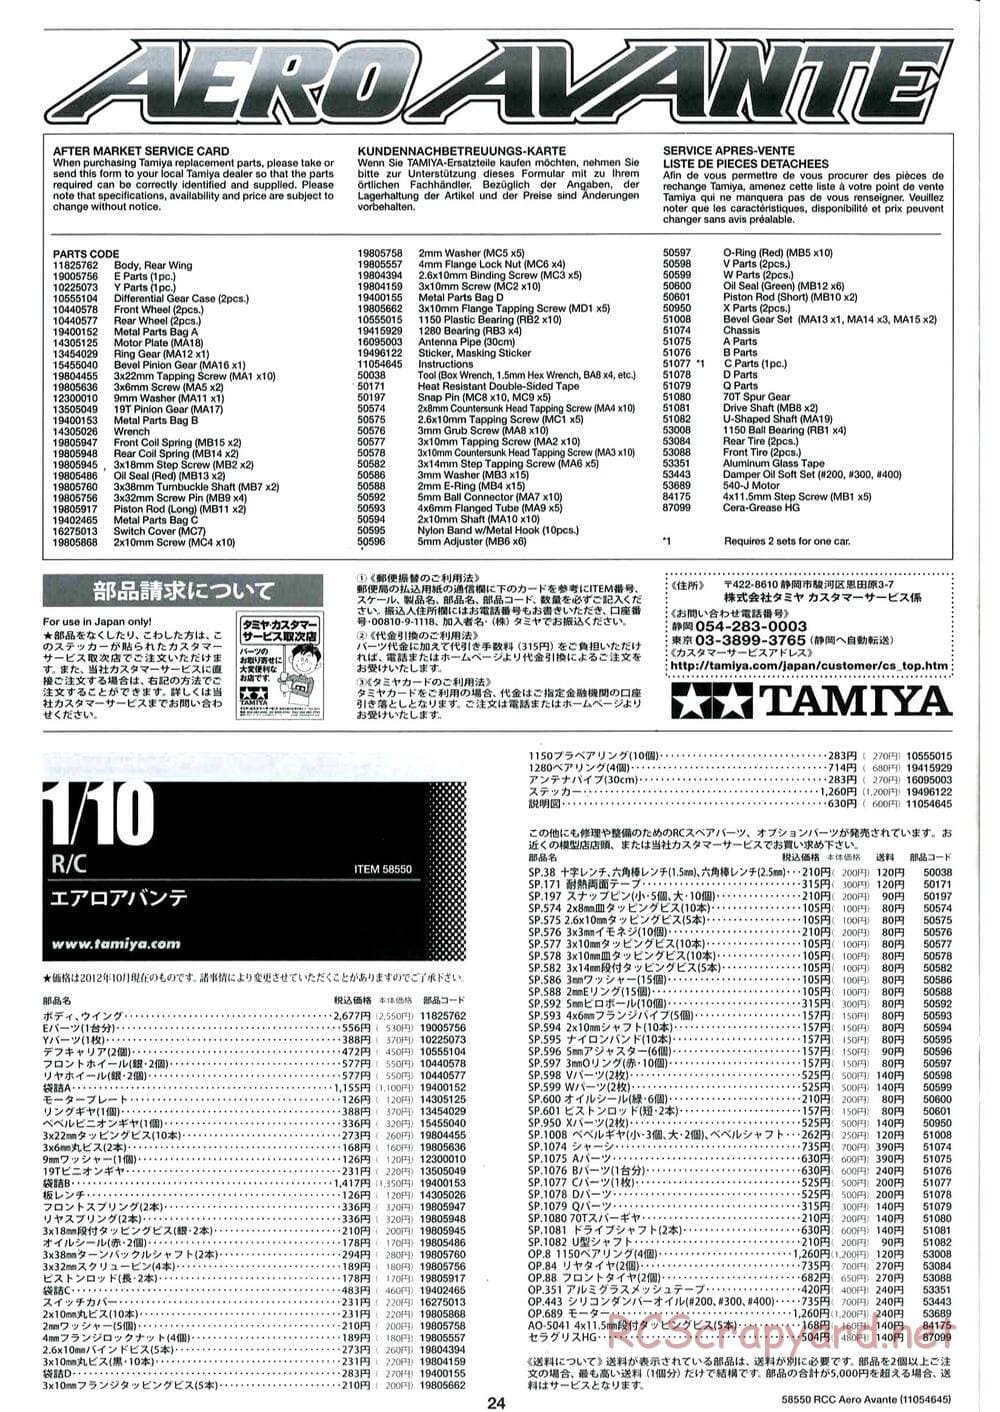 Tamiya - Aero Avante Chassis - Manual - Page 24